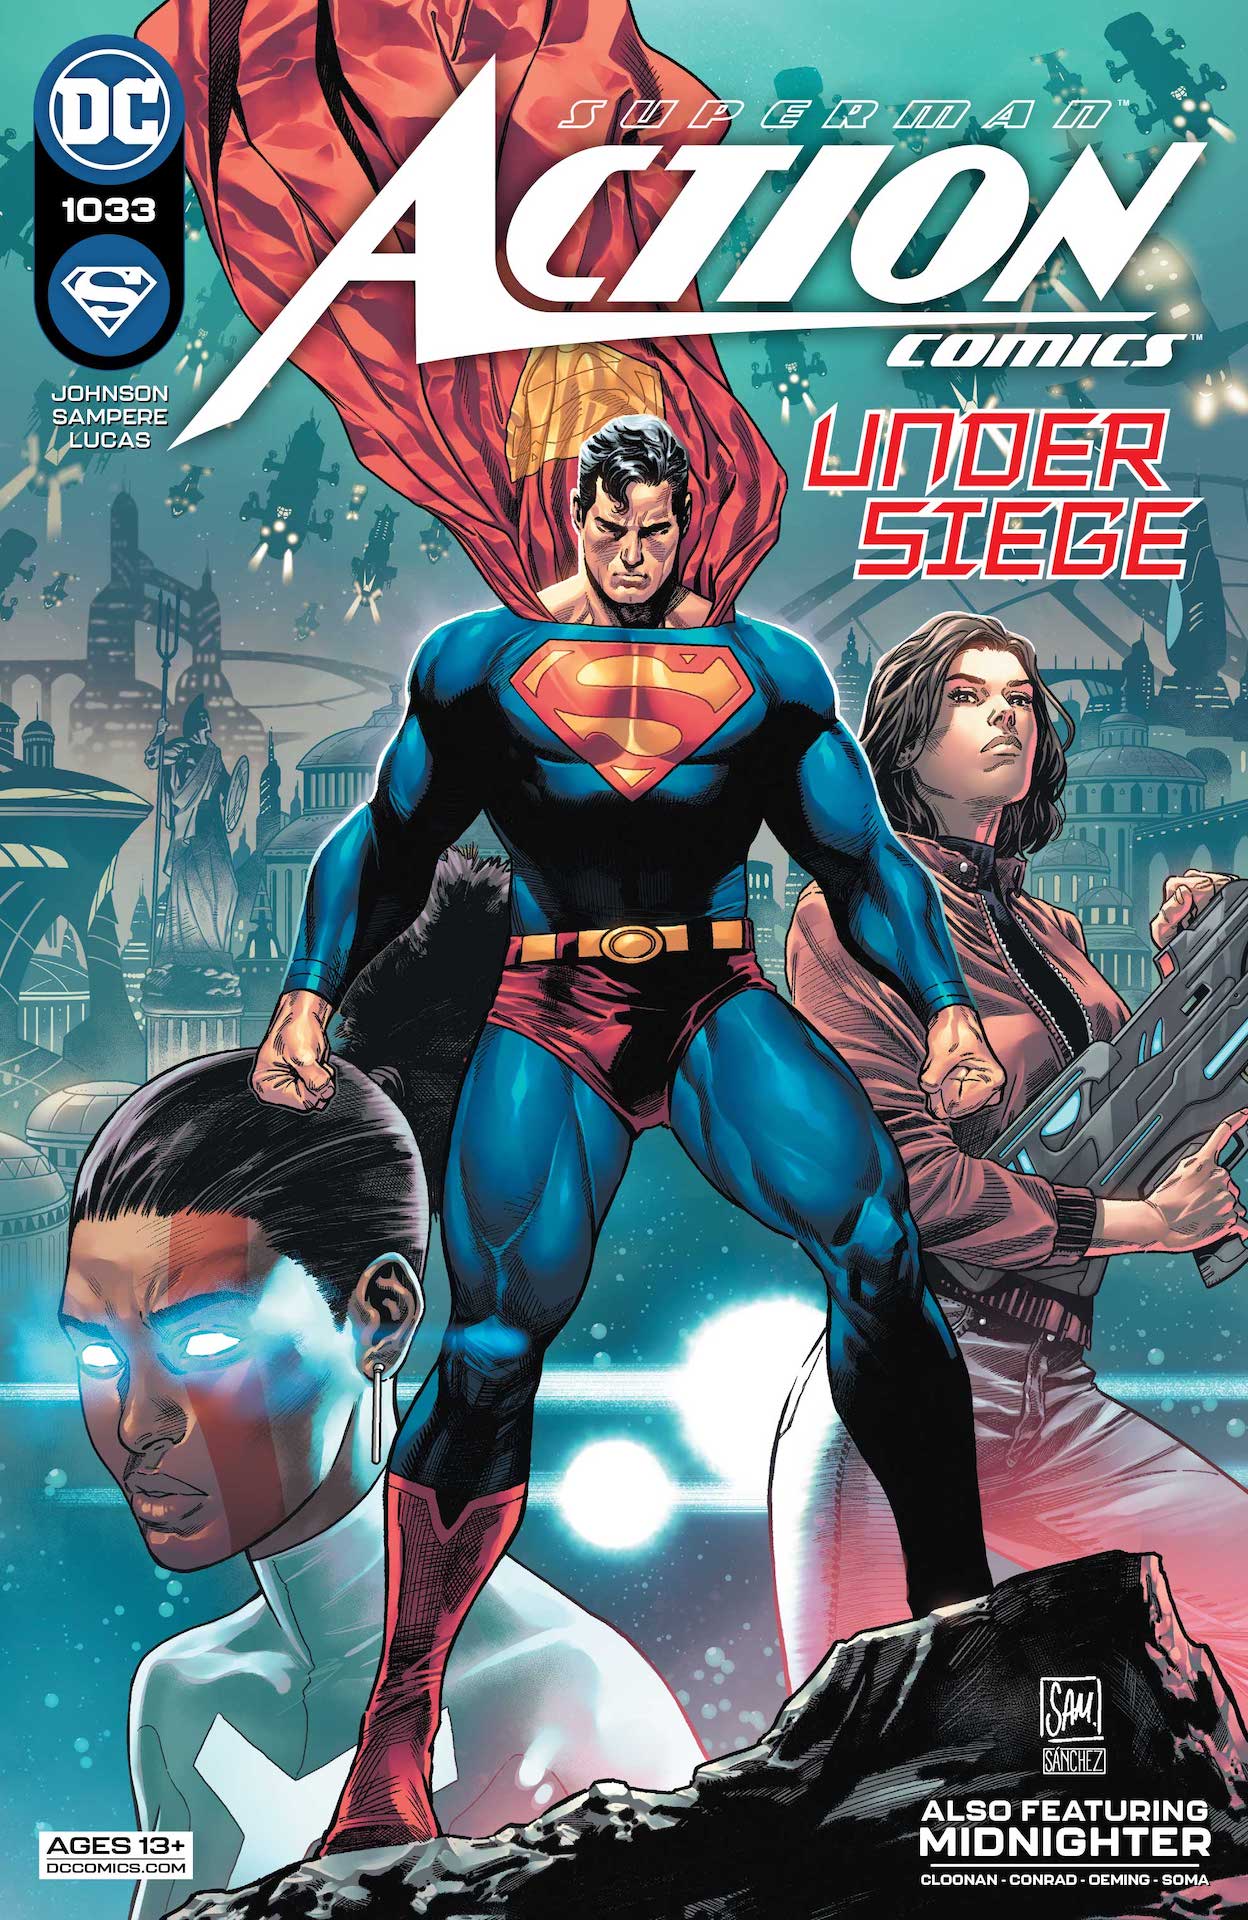 DC Preview: Action Comics #1033